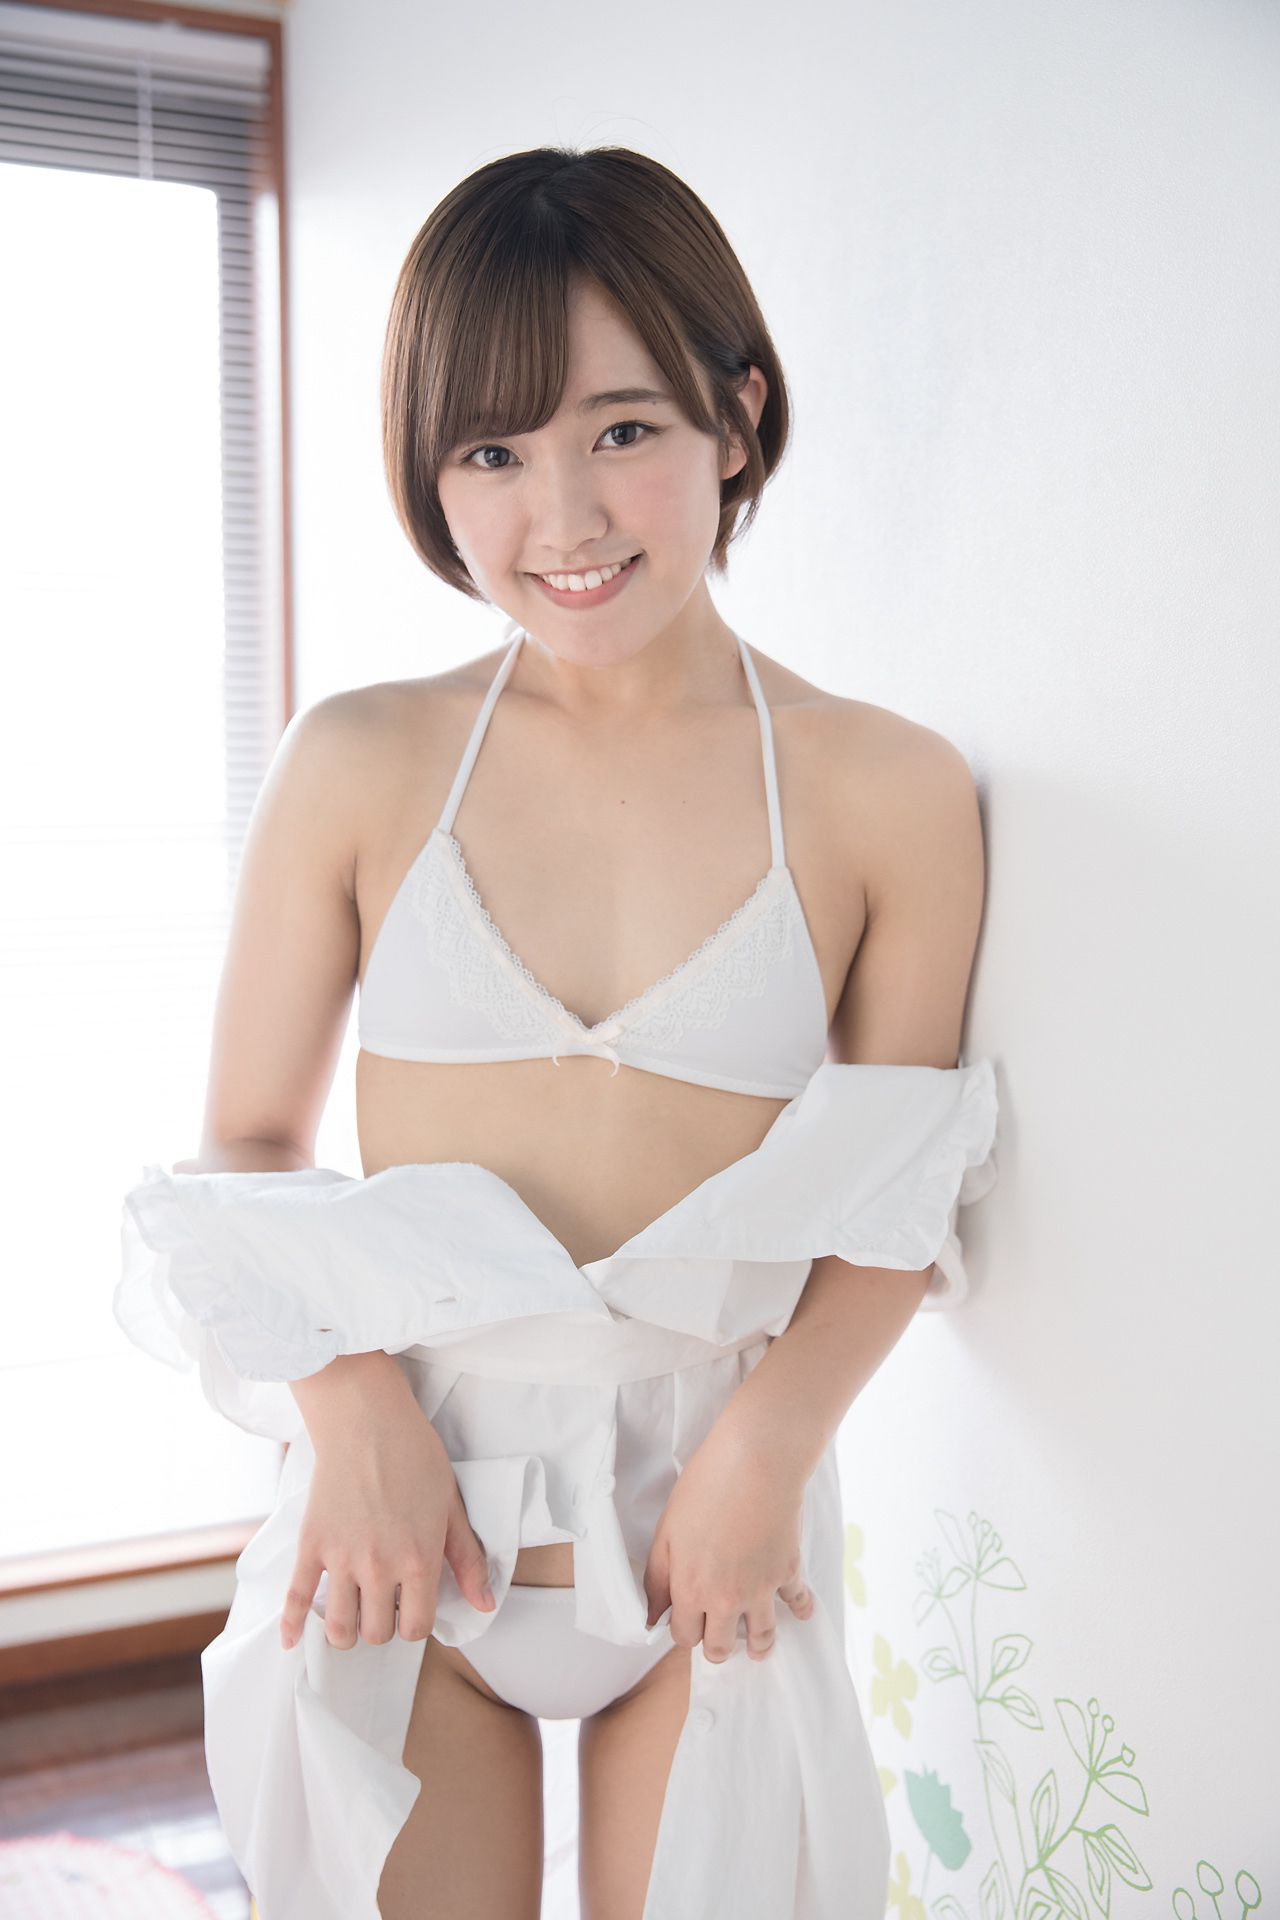 [Minisuka.tv]内衣美女日本萌妹子:香月杏珠(香月りお)高品质壁纸图片珍藏版(40P)